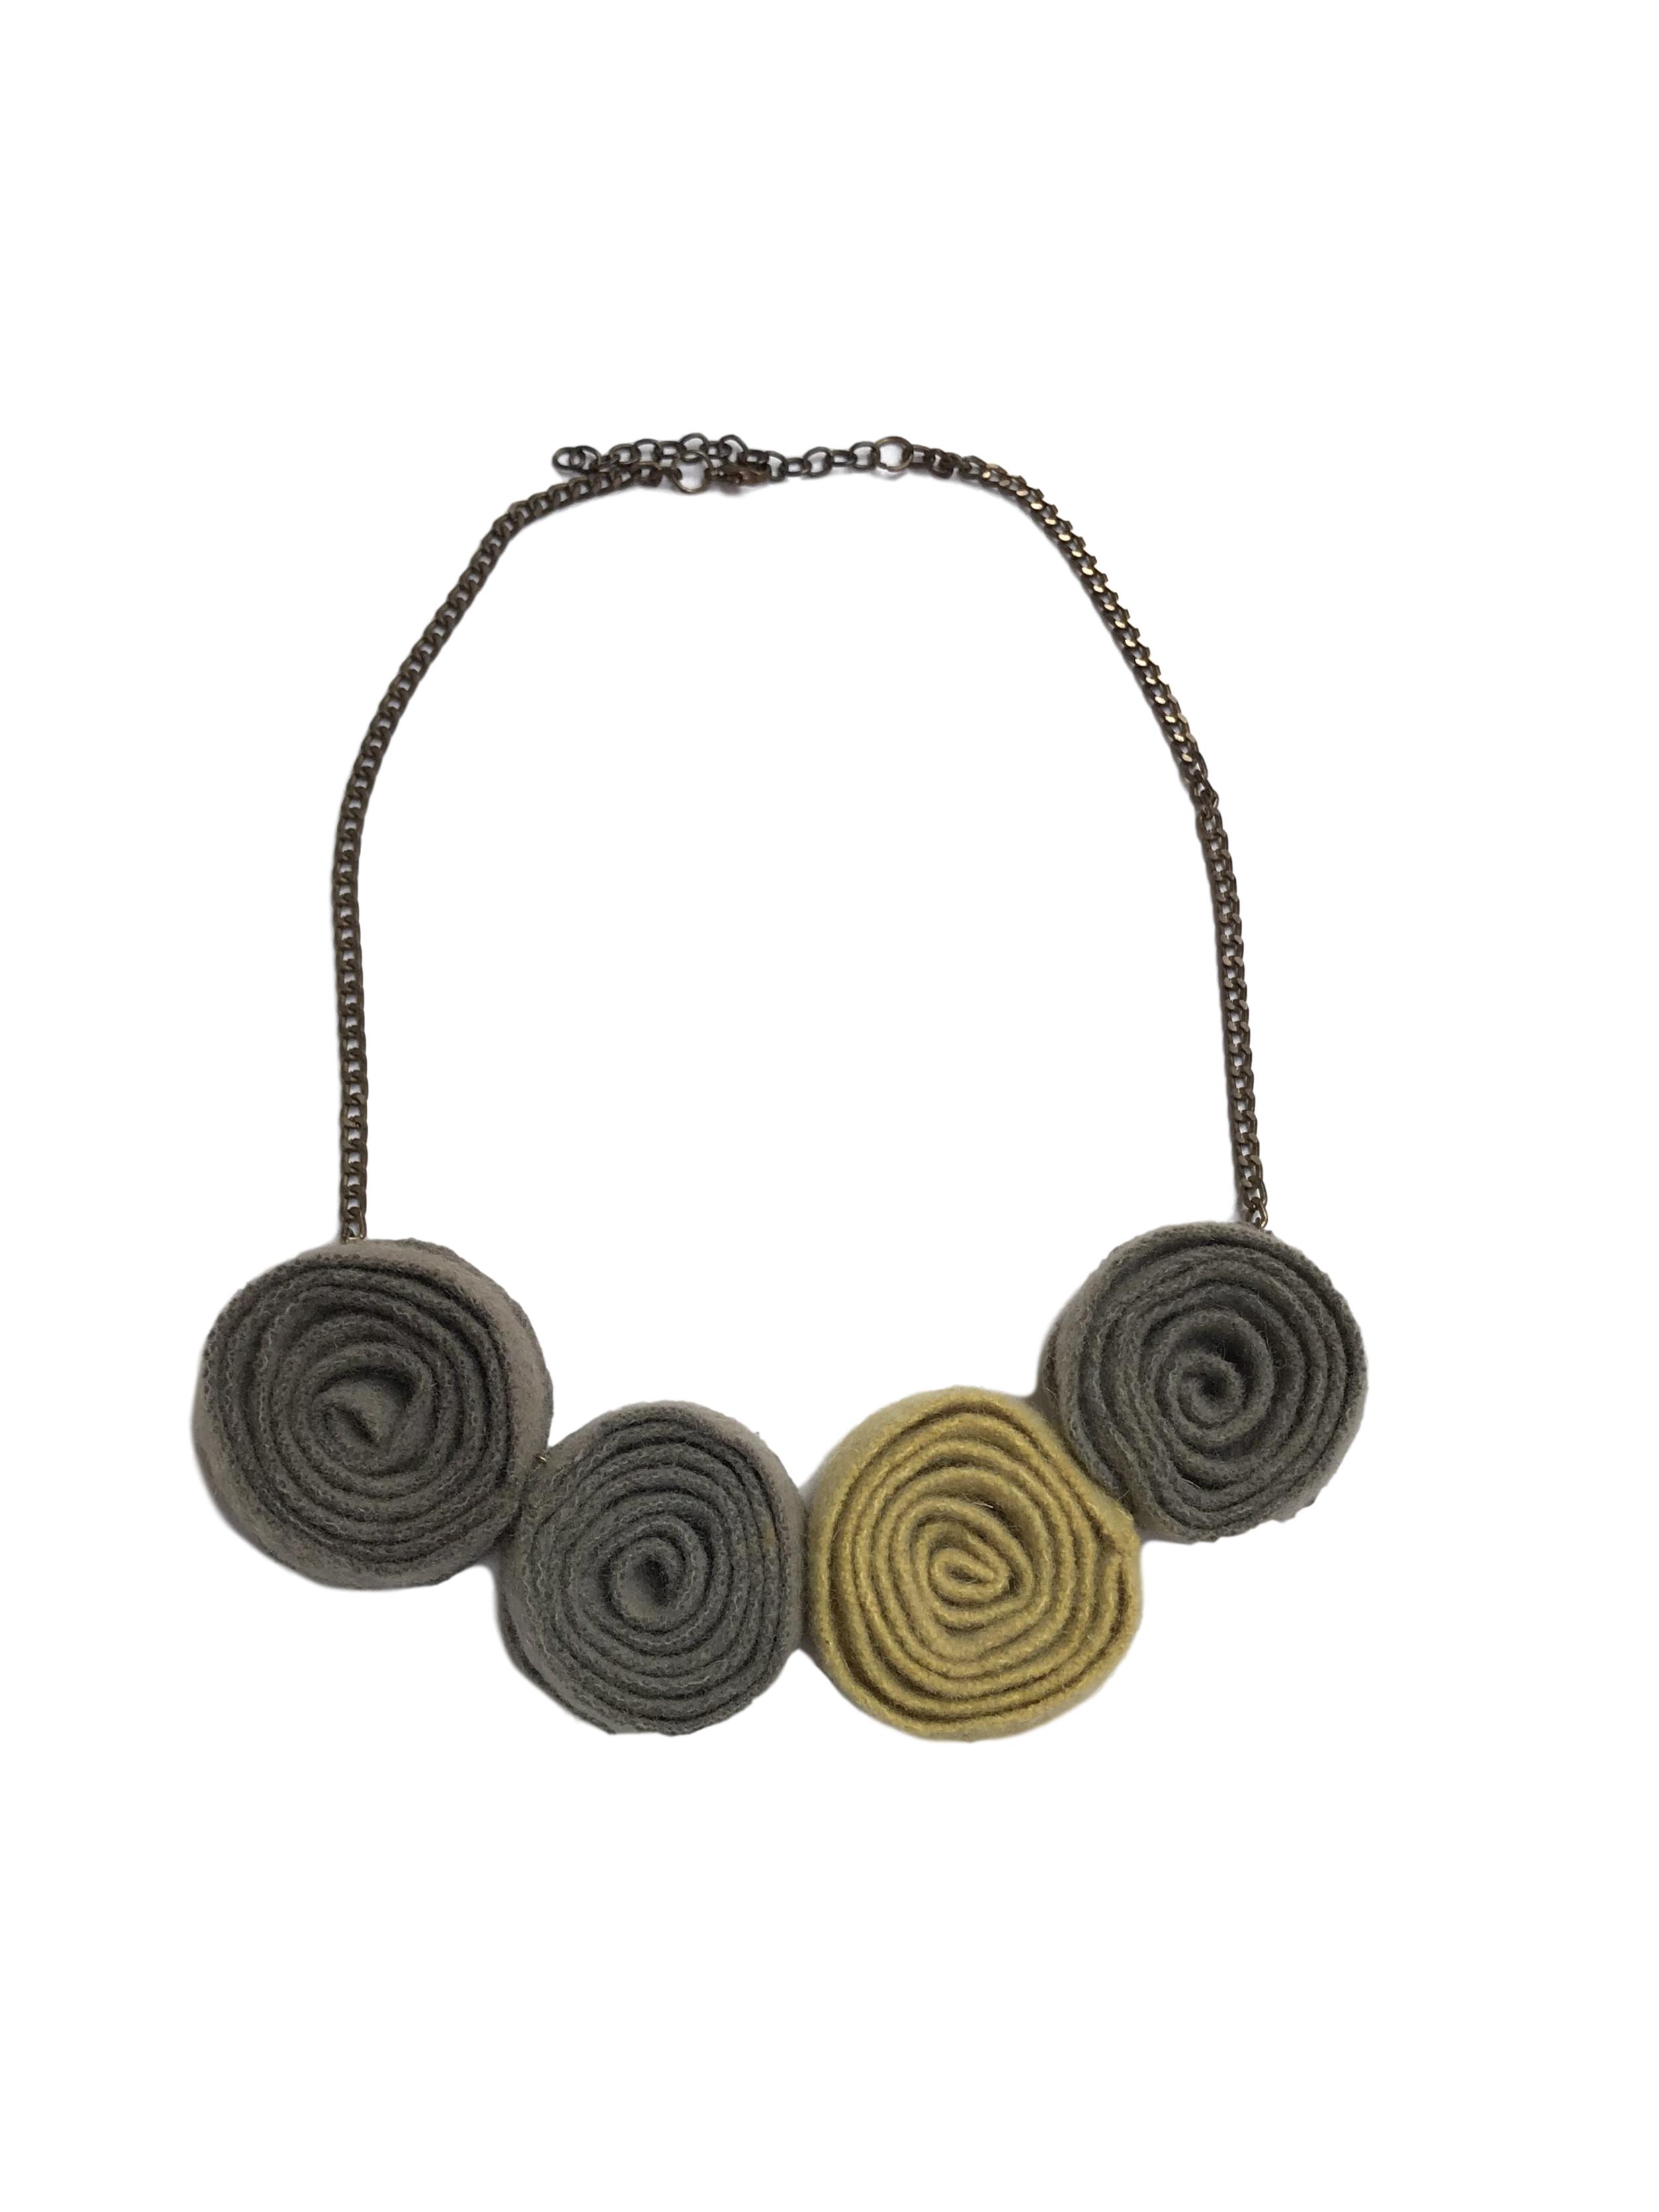 Collar cadena tono bronce con esferas de tela tipo lanilla. Largo de cadena 55cm (+5 regulable)